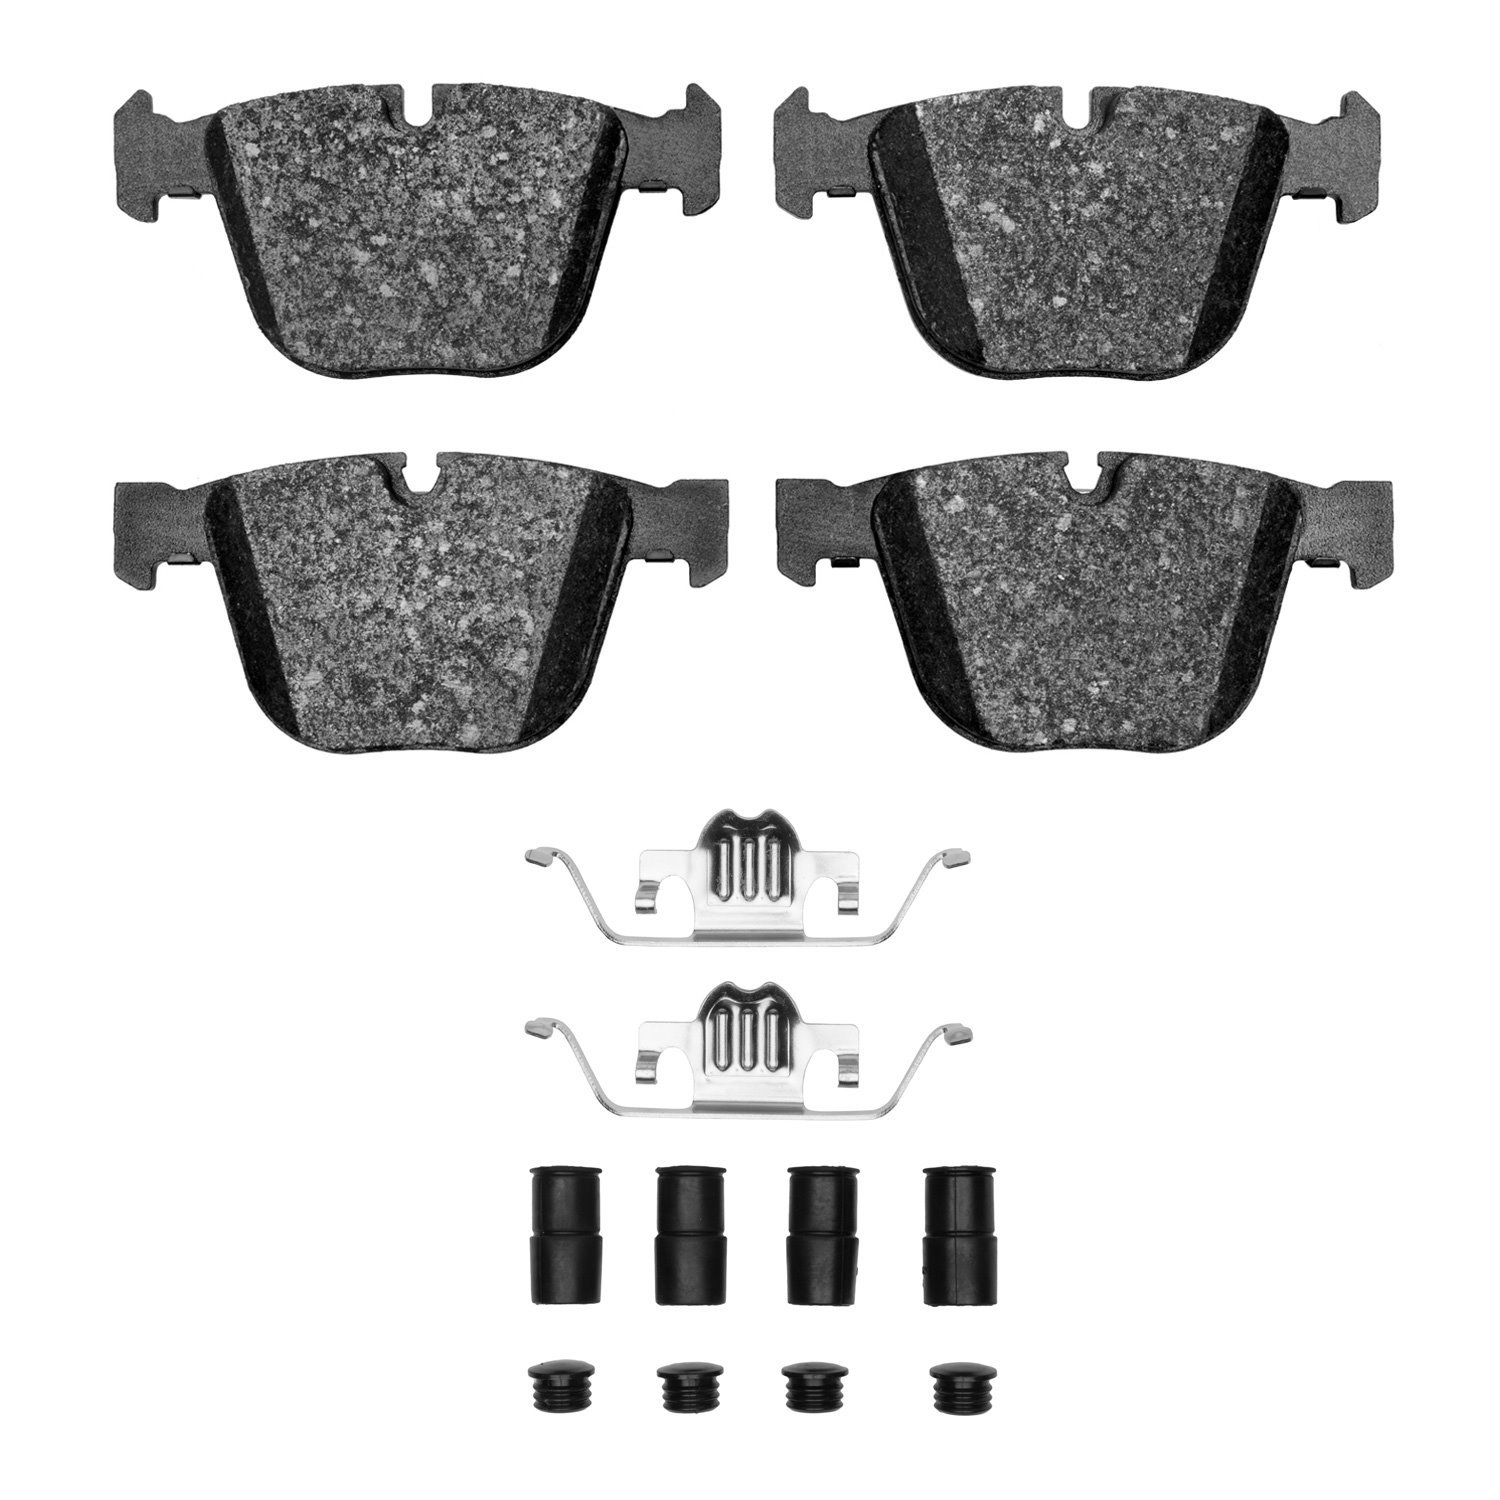 1600-0919-22 5000 Euro Ceramic Brake Pads & Hardware Kit, 2010-2019 BMW, Position: Rear